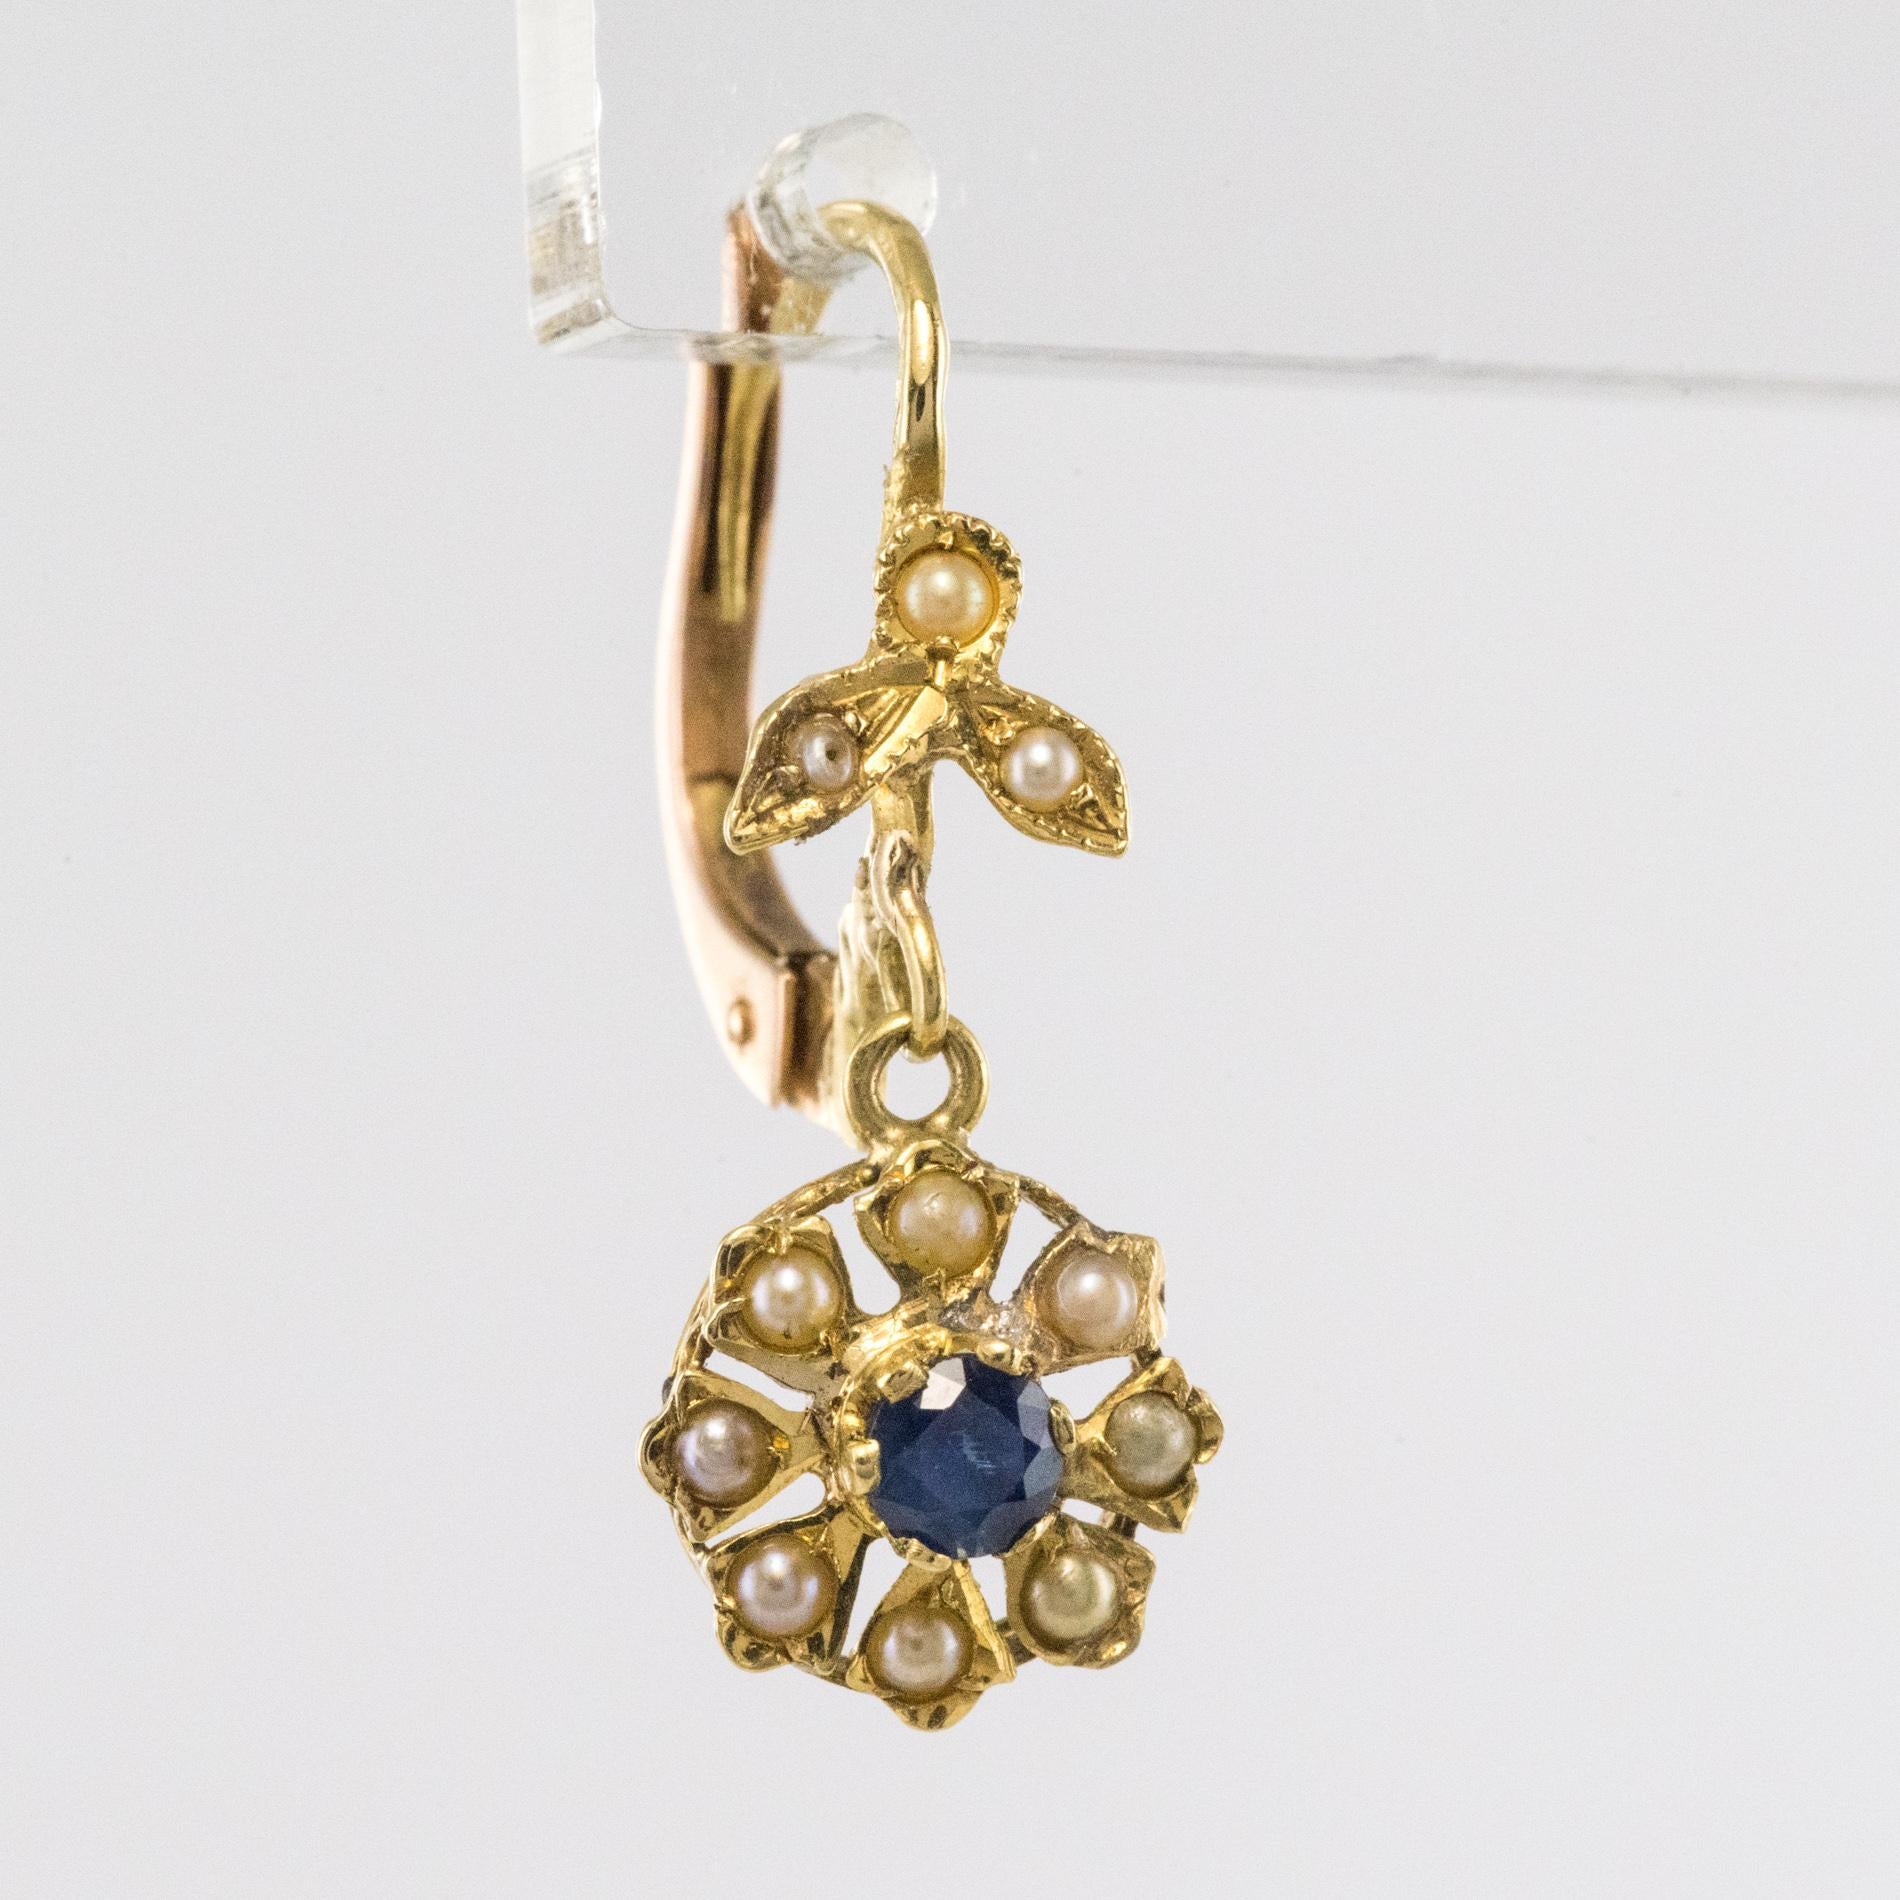 1900 earrings